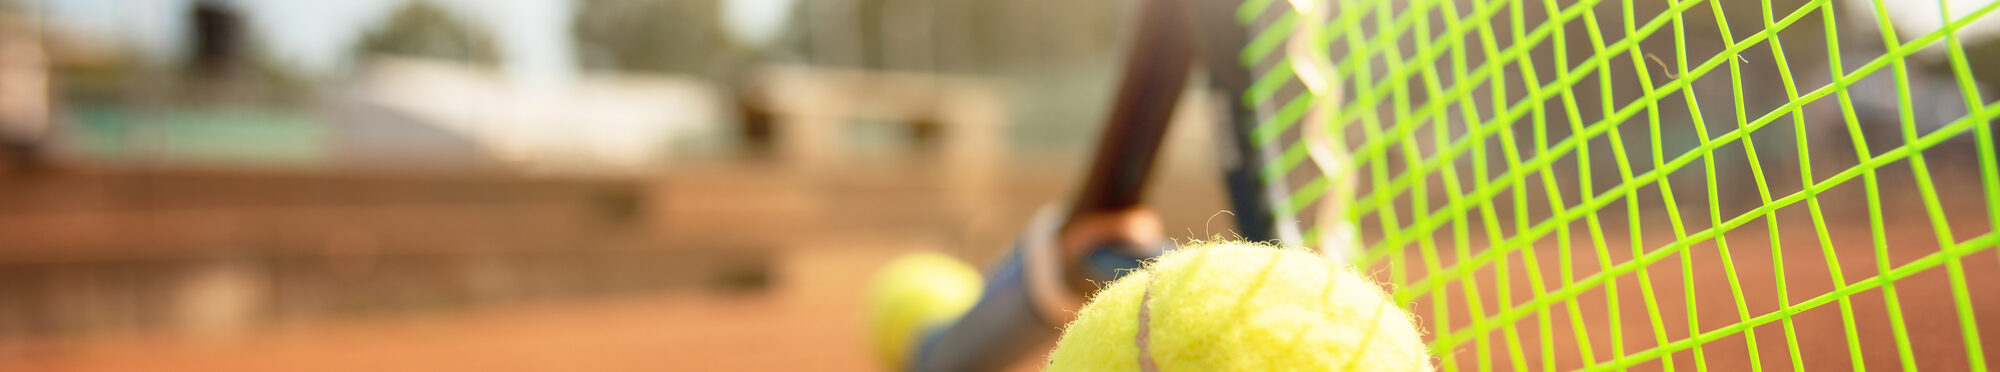 Tennisschläger und -ball nah